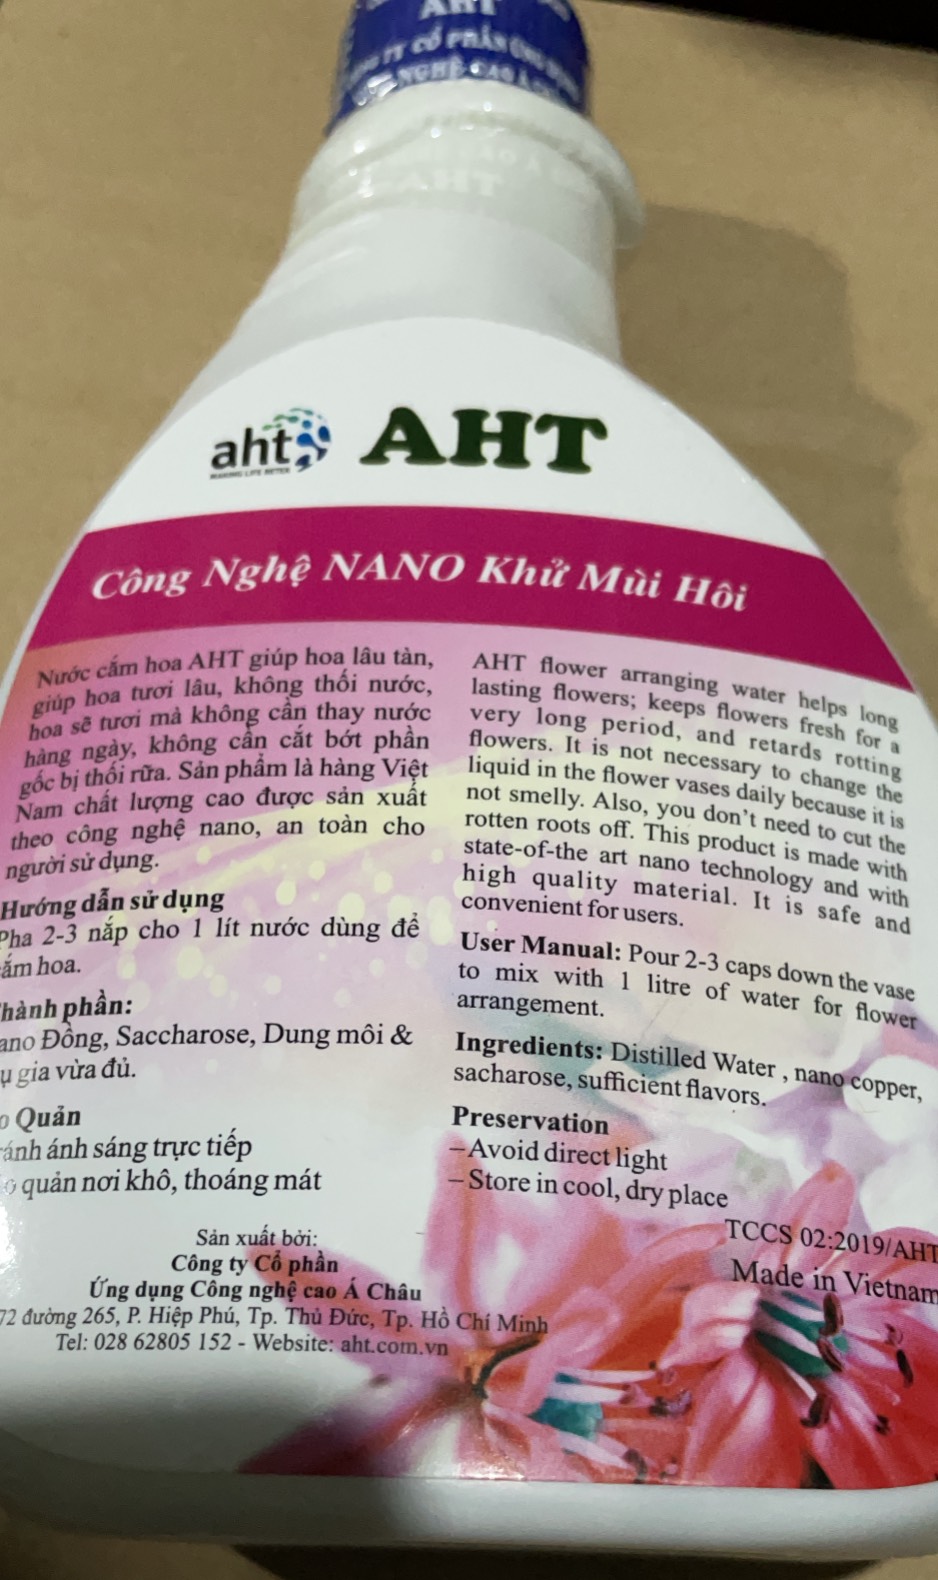 Nước cắm hoa AHT 430 ml giúp hoa lâu tàn